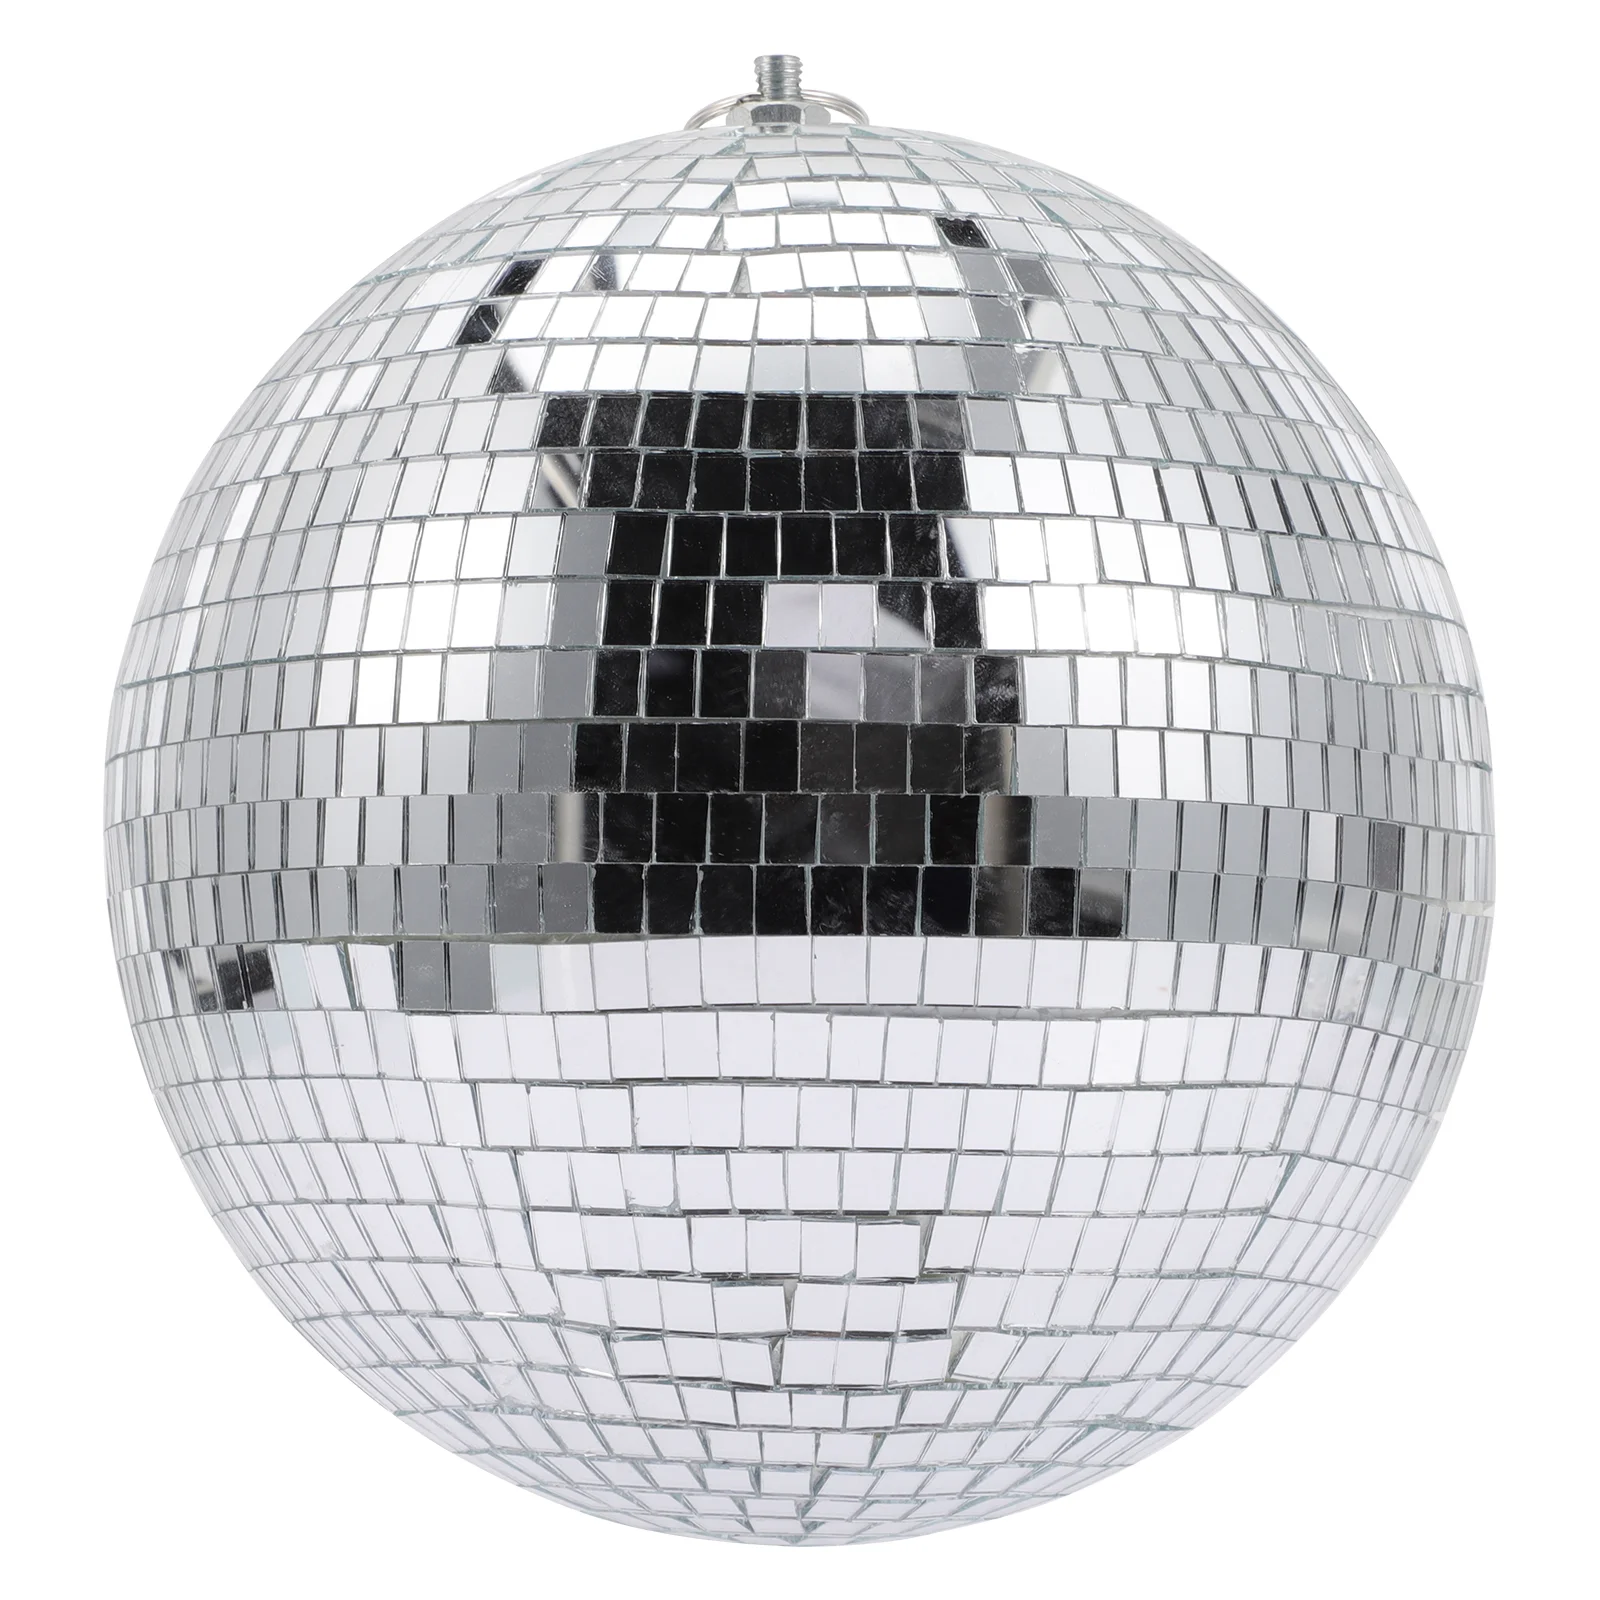 

Декоративный зеркальный шар, подвесной серебряный шар, пластиковый зеркальный шар, украшение для ночного клуба, Рождественское украшение